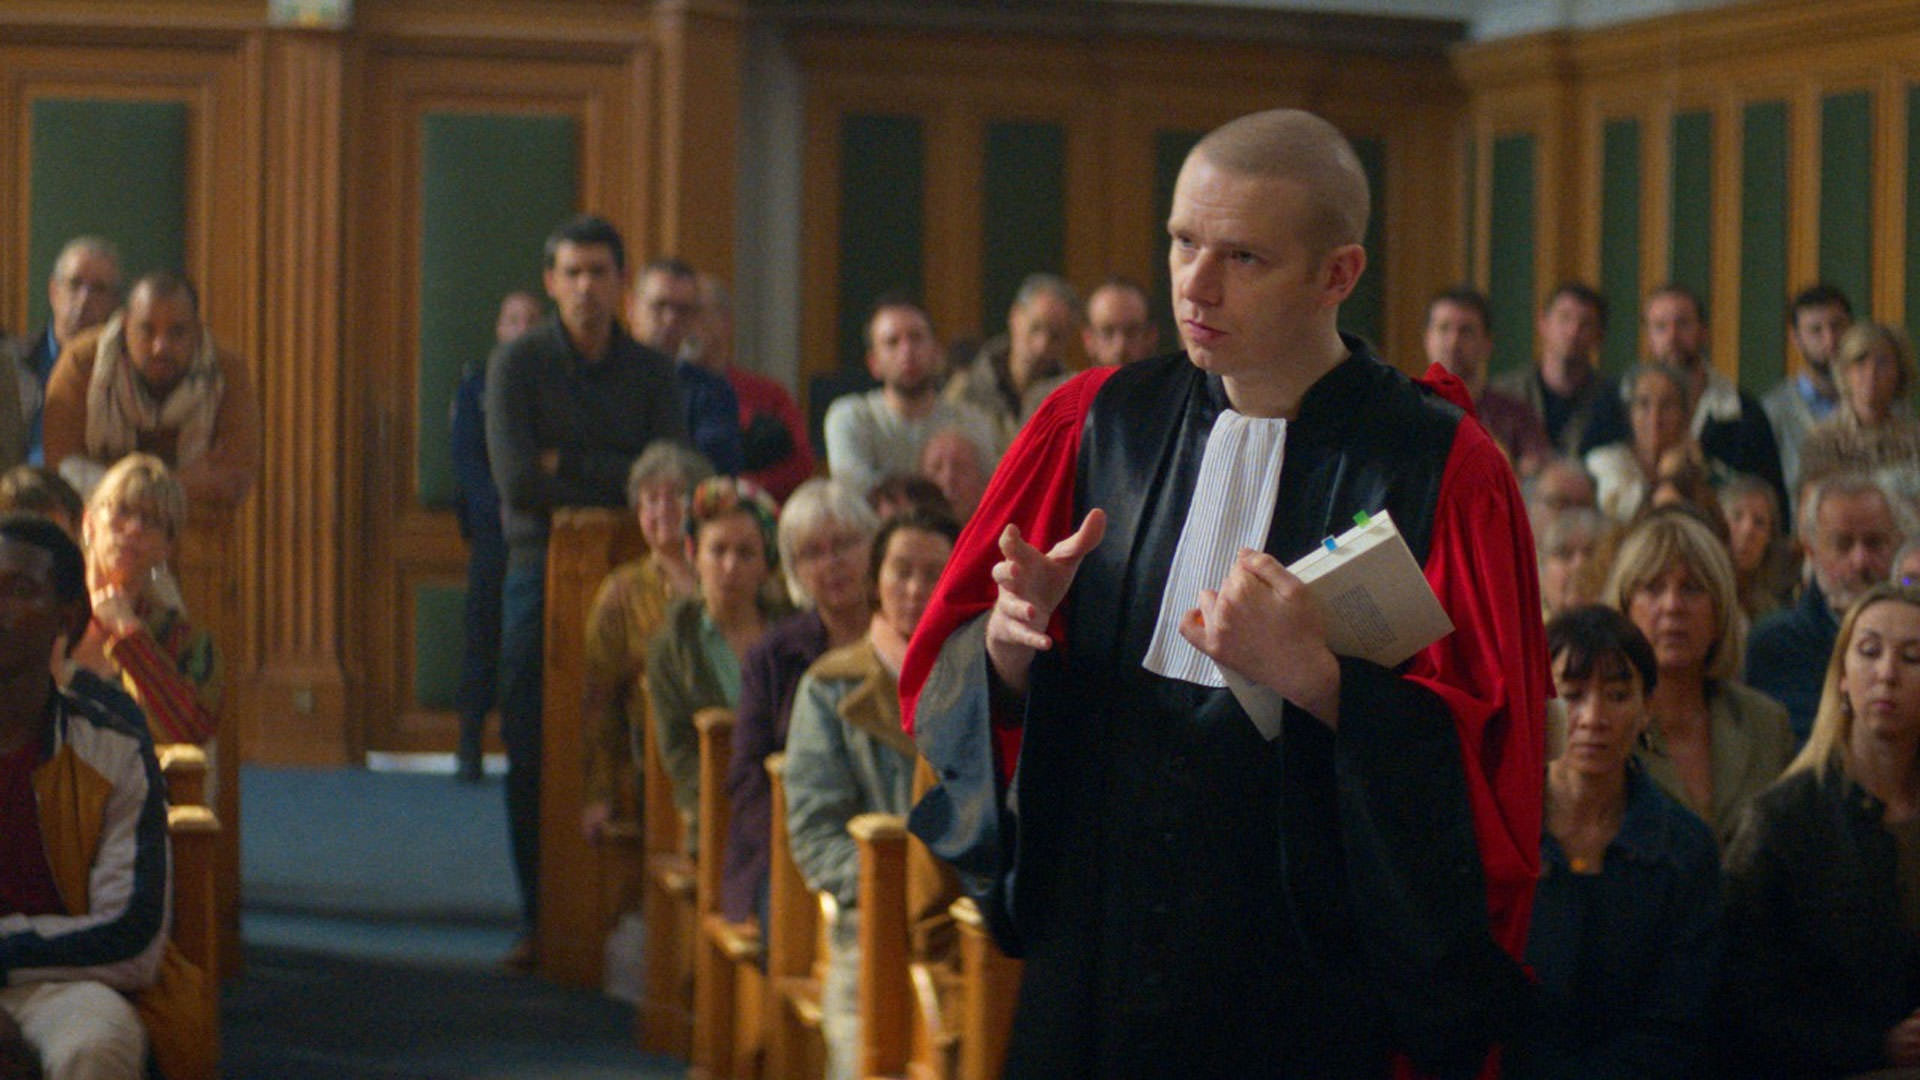 آنتوان رنارتس در نقش دادستان در نمایی از فیلم آناتومی یک سقوط به کارگردانی ژوستین تریه